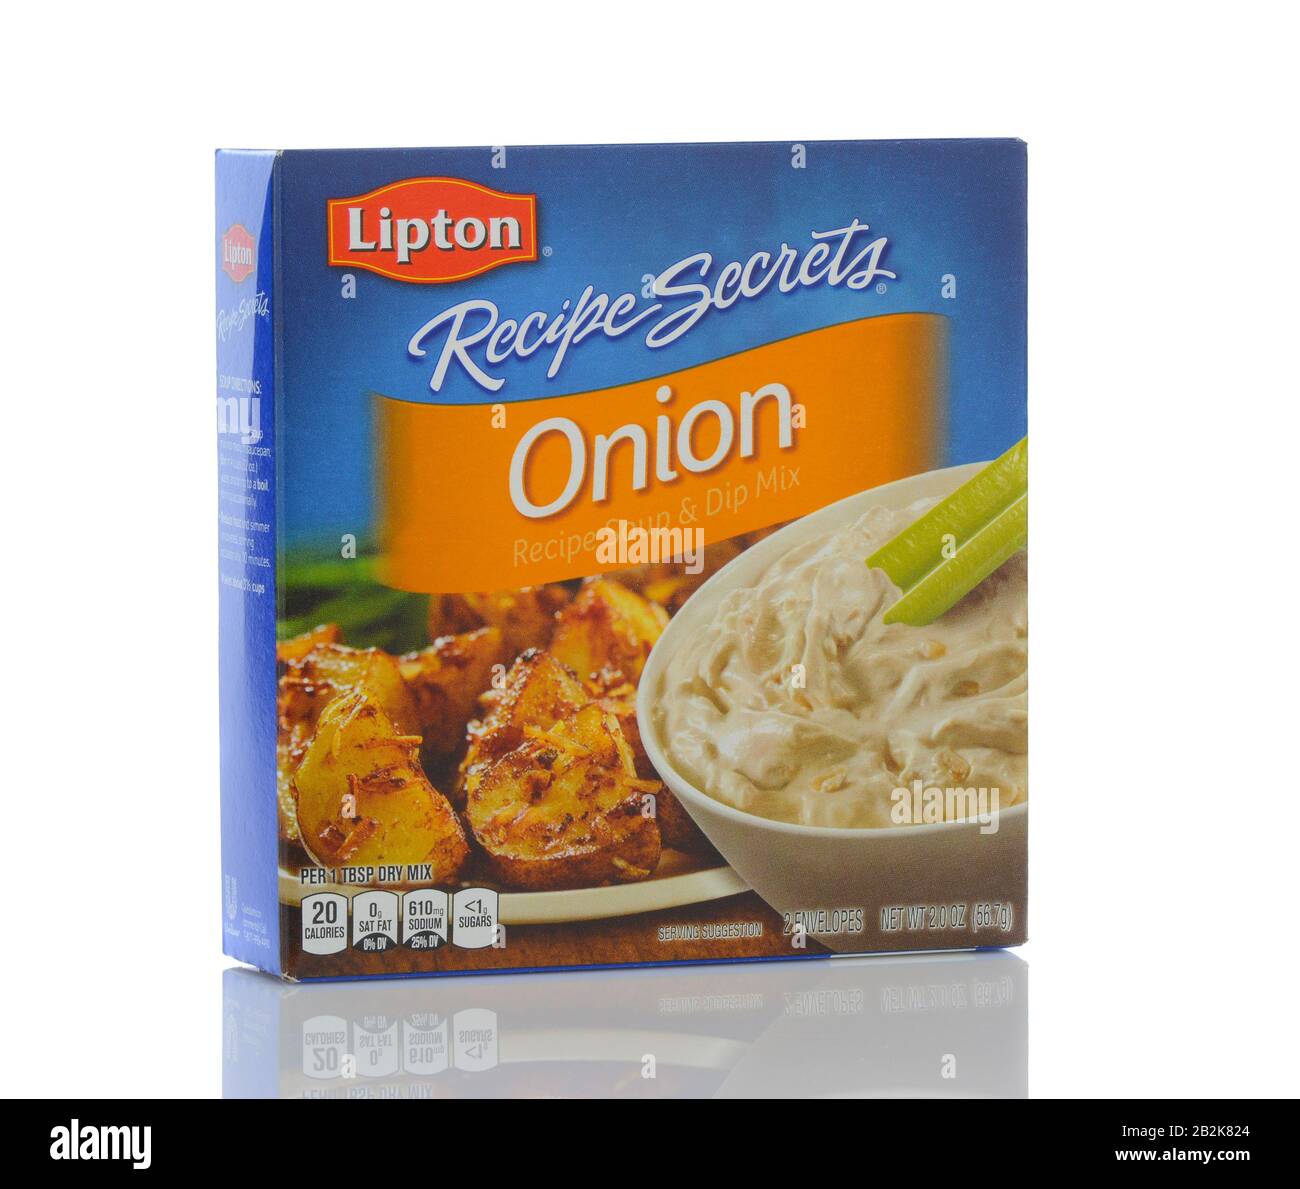 Irvine, CALIFORNIE - 22 MAI 2019: Une boîte de Lipton Recipe secrets oignon soupe et Dip Mix. Banque D'Images